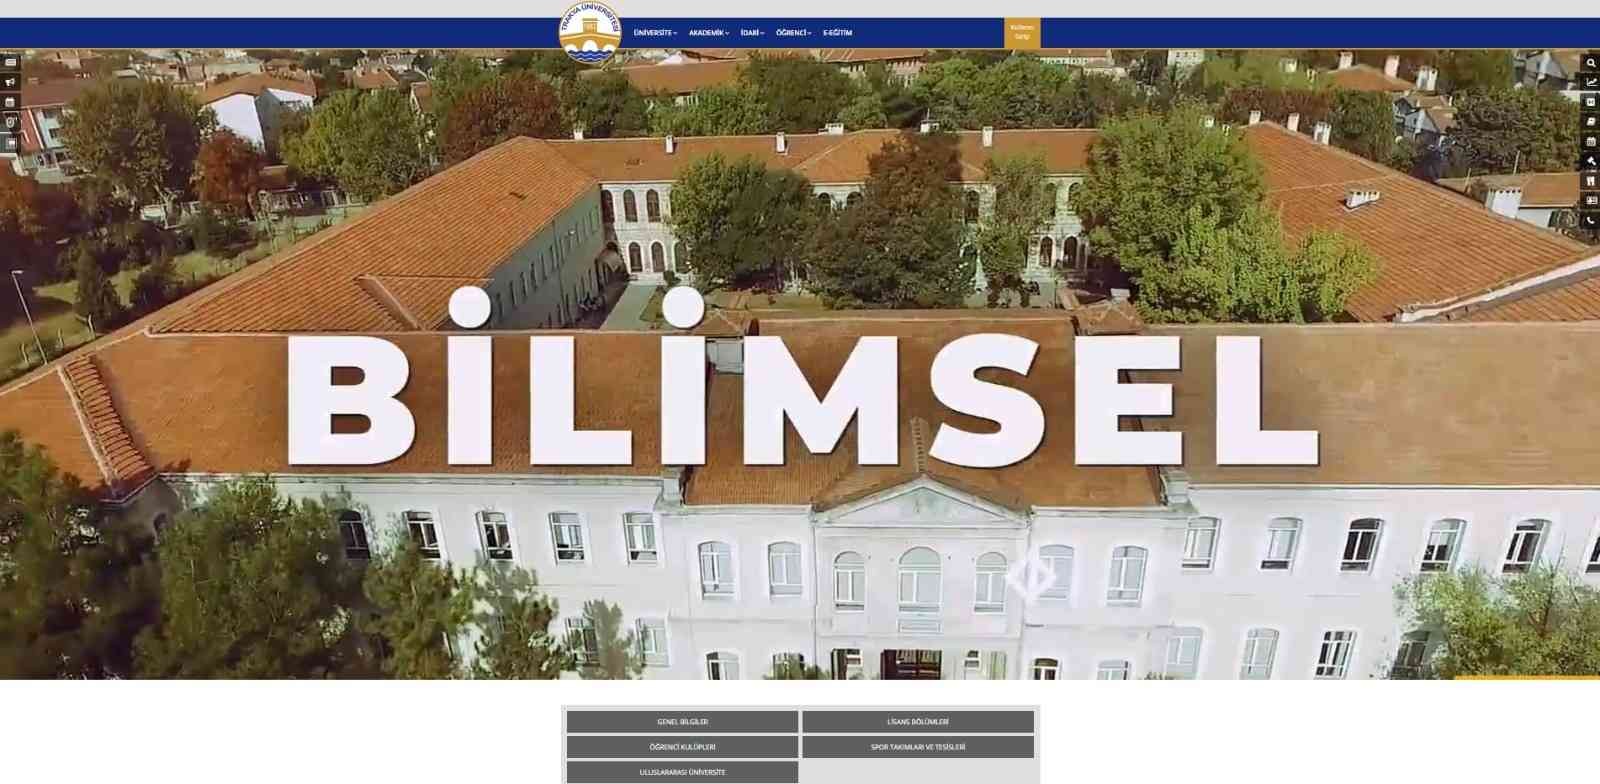 Edirne’de öğrenci adaylarına 5 dilde tanıtım #edirne